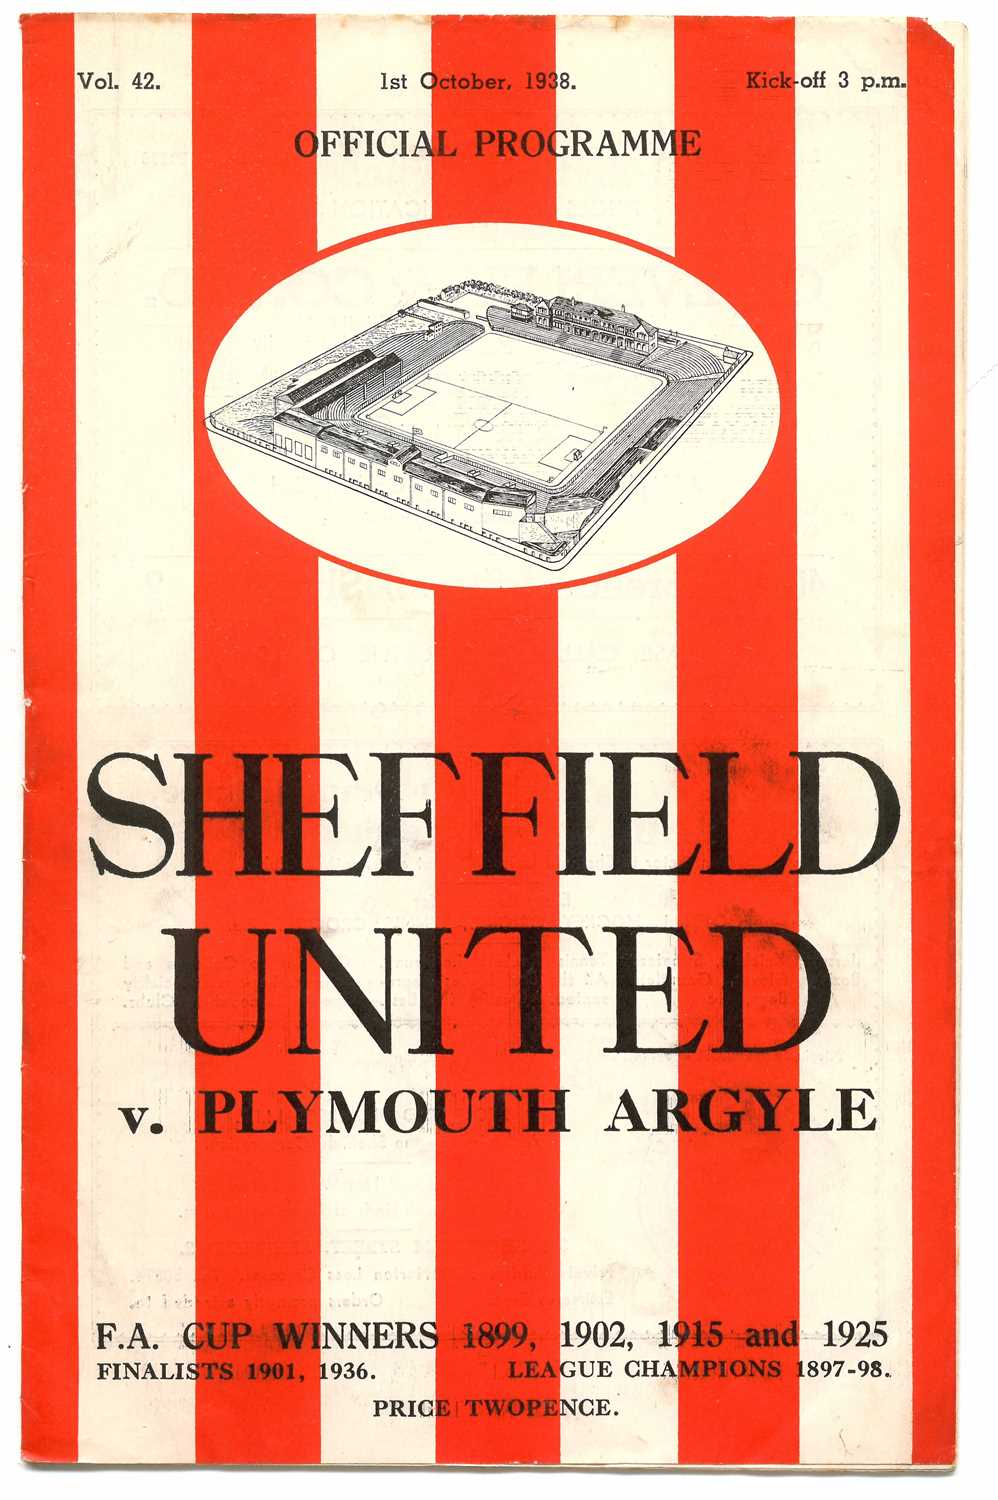 Lot Sheffield United v Plymouth Argyle